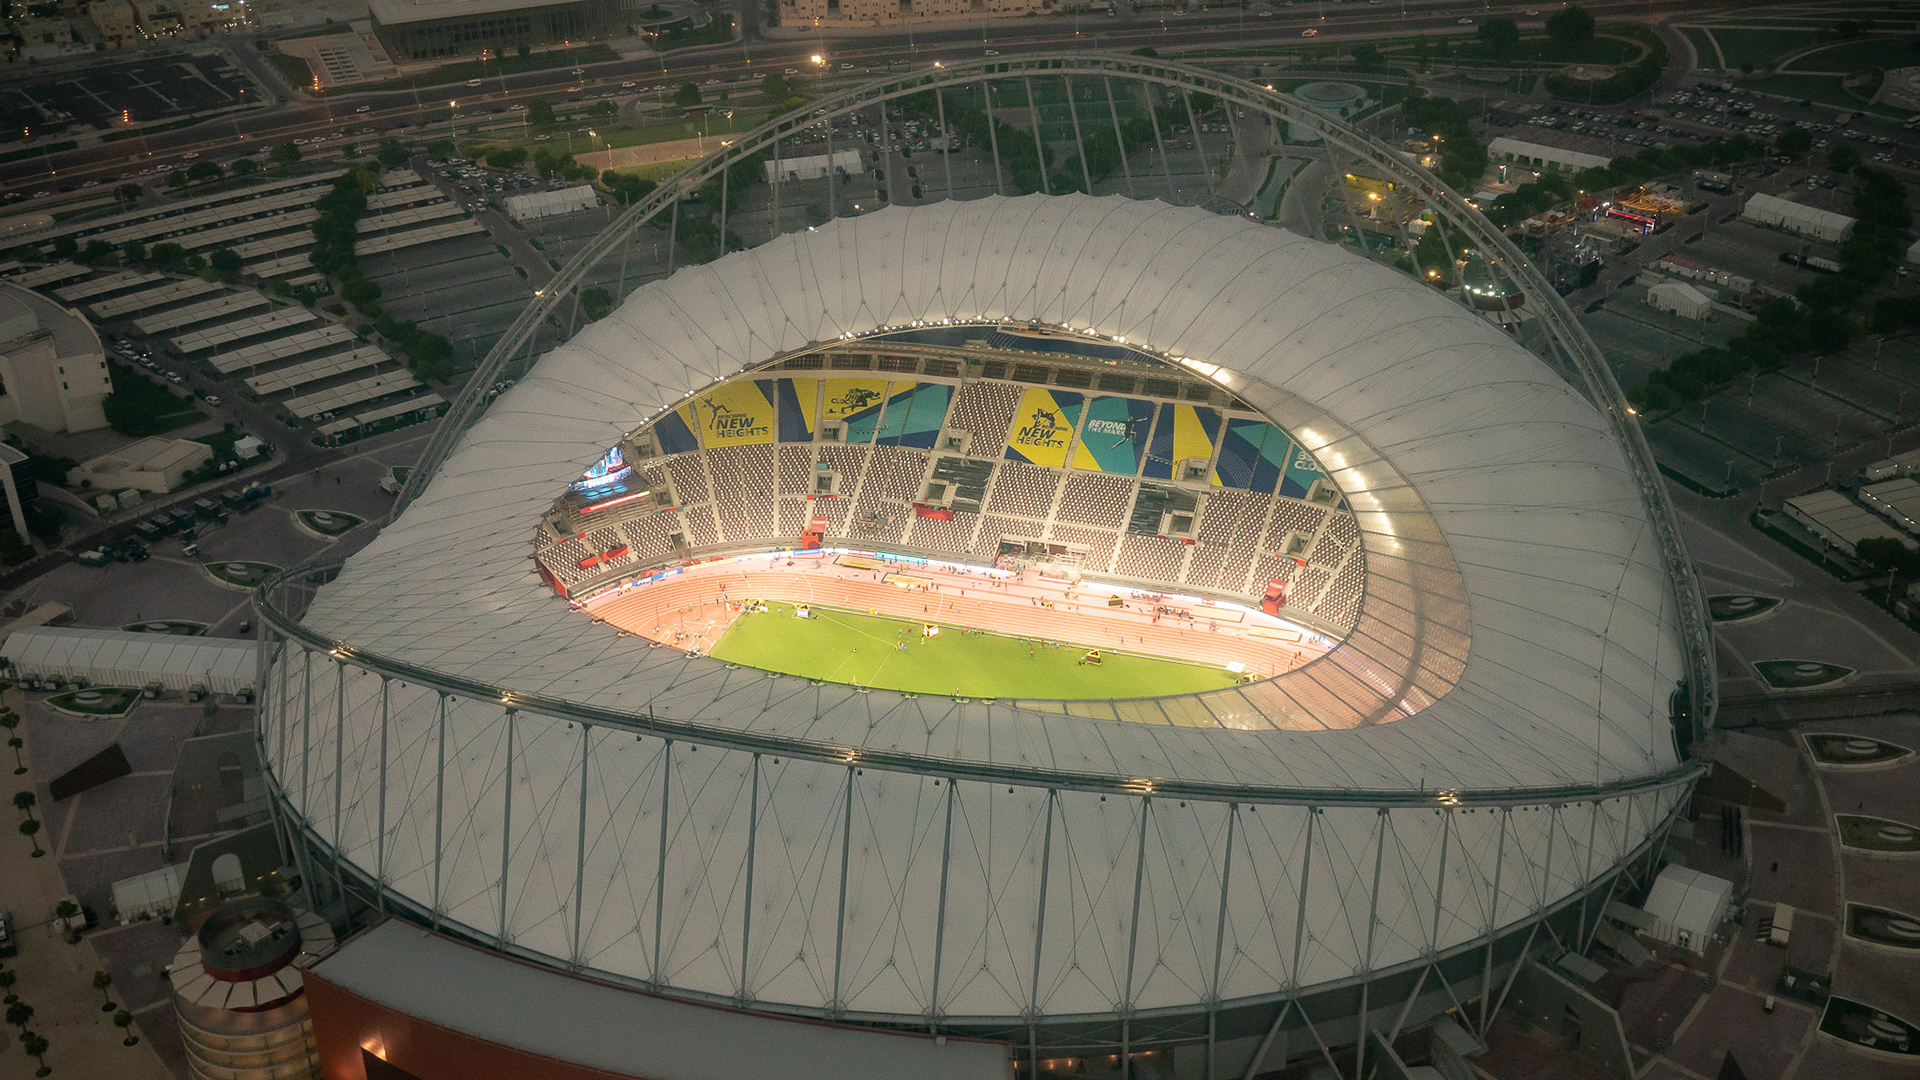 Blick auf das Stadion in Katar